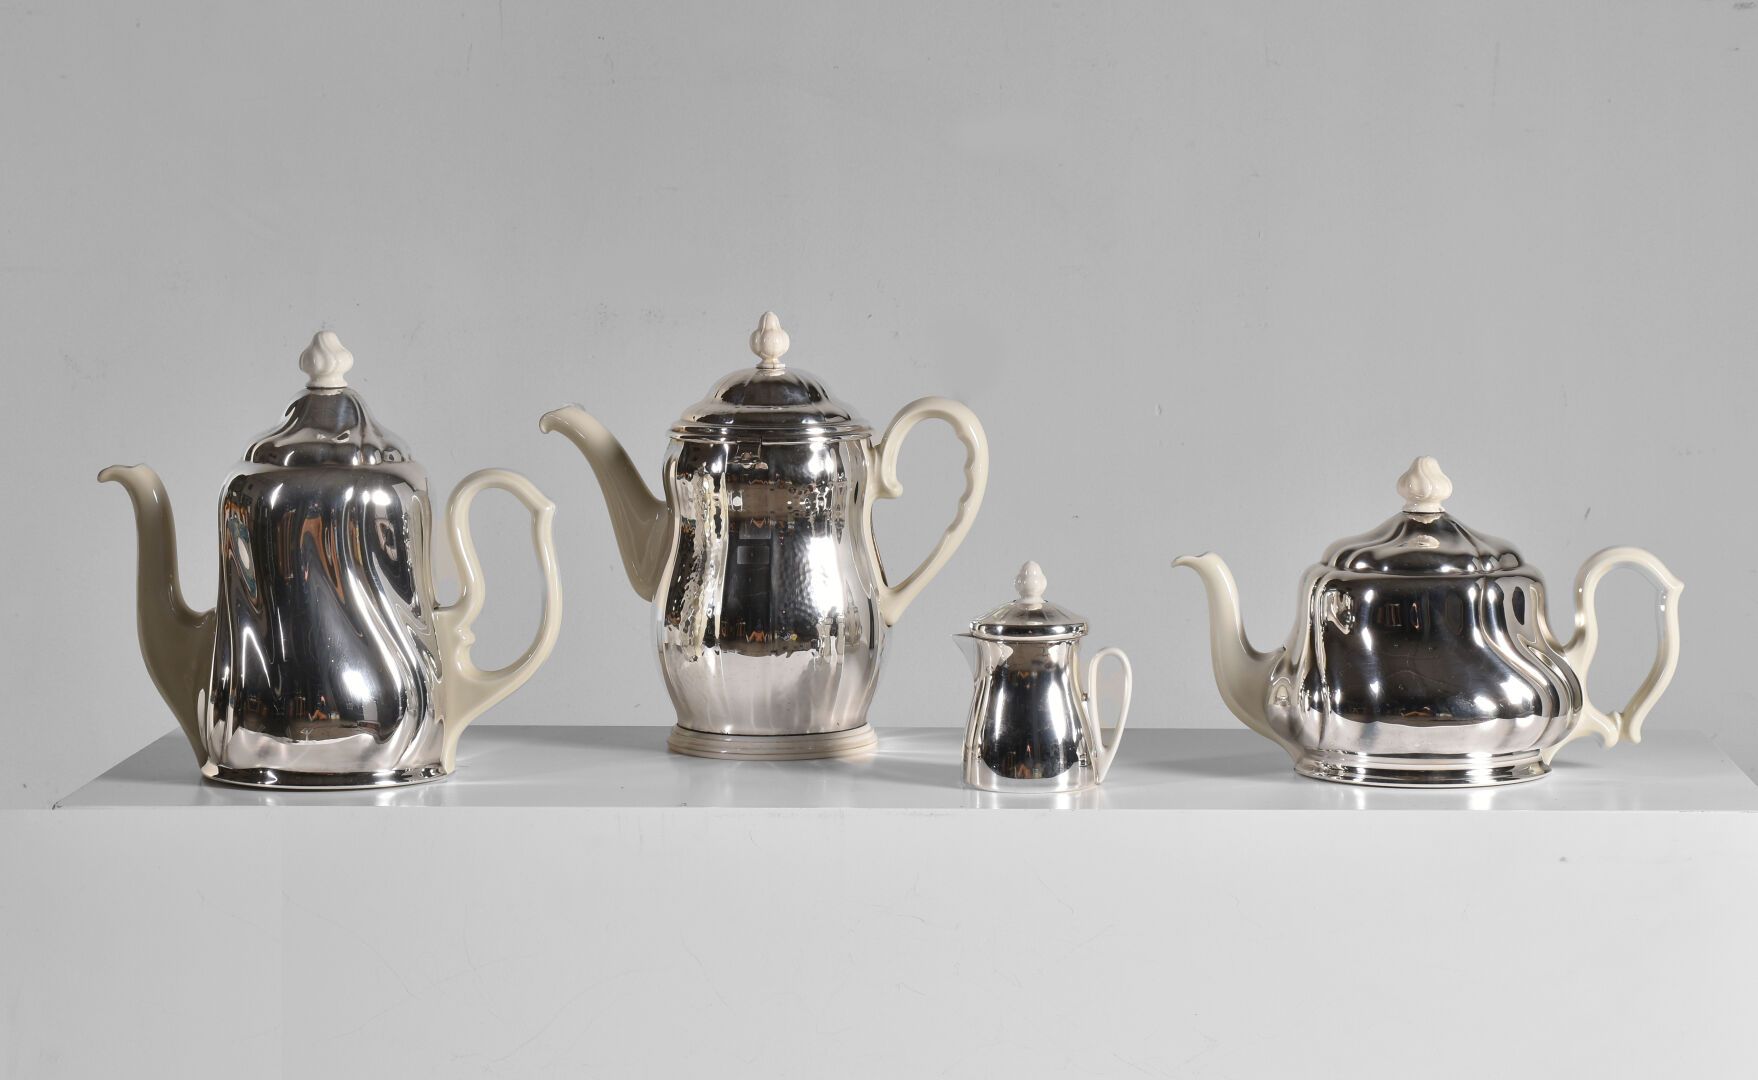 SERVICE A CAFE 咖啡套装，包括茶壶、咖啡壶、牛奶壶和糖罐。
瓷器和镀银金属。
最大高度：25.5 厘米